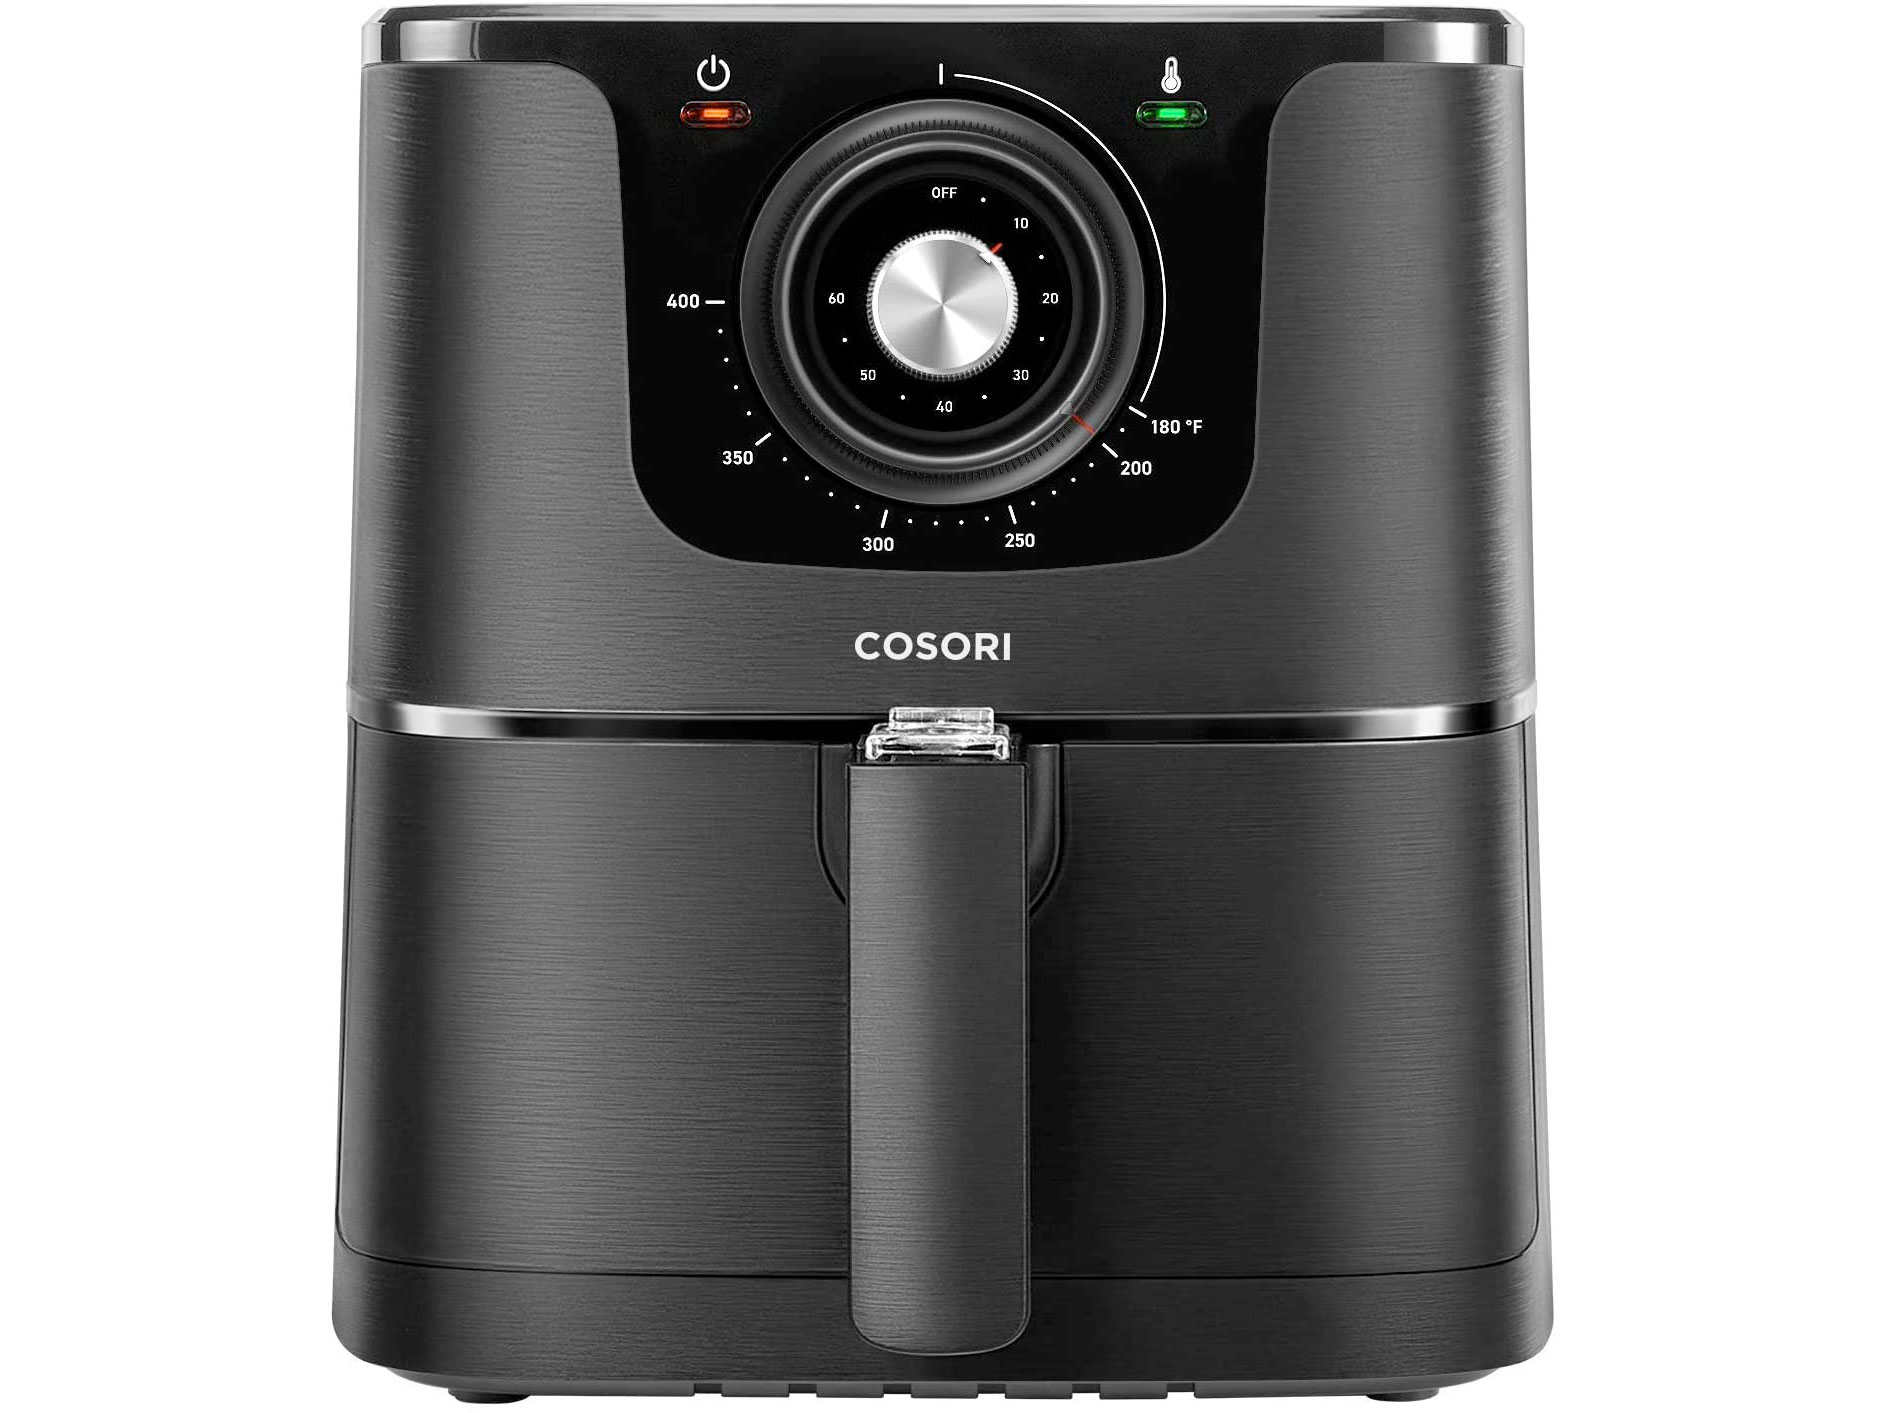 Amazon：COSORI Air Fryer只賣$83.99(只限Amazon Prime會員)